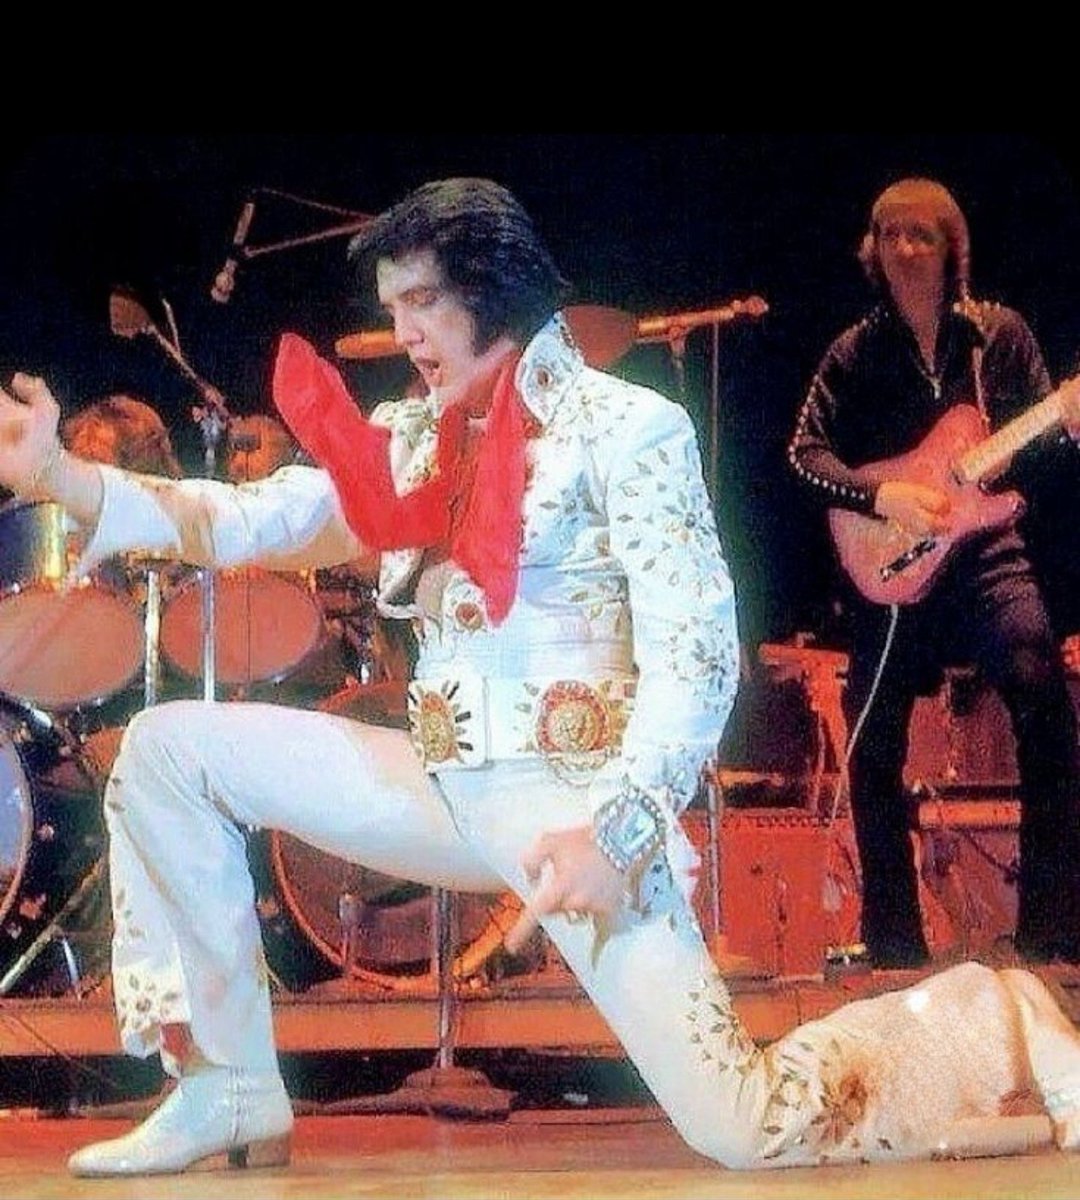 April 18,1972;
Elvis on stage 
San Antonio Texas.
#ElvisOnTour 
#ElvisPresley #ElvisHistory